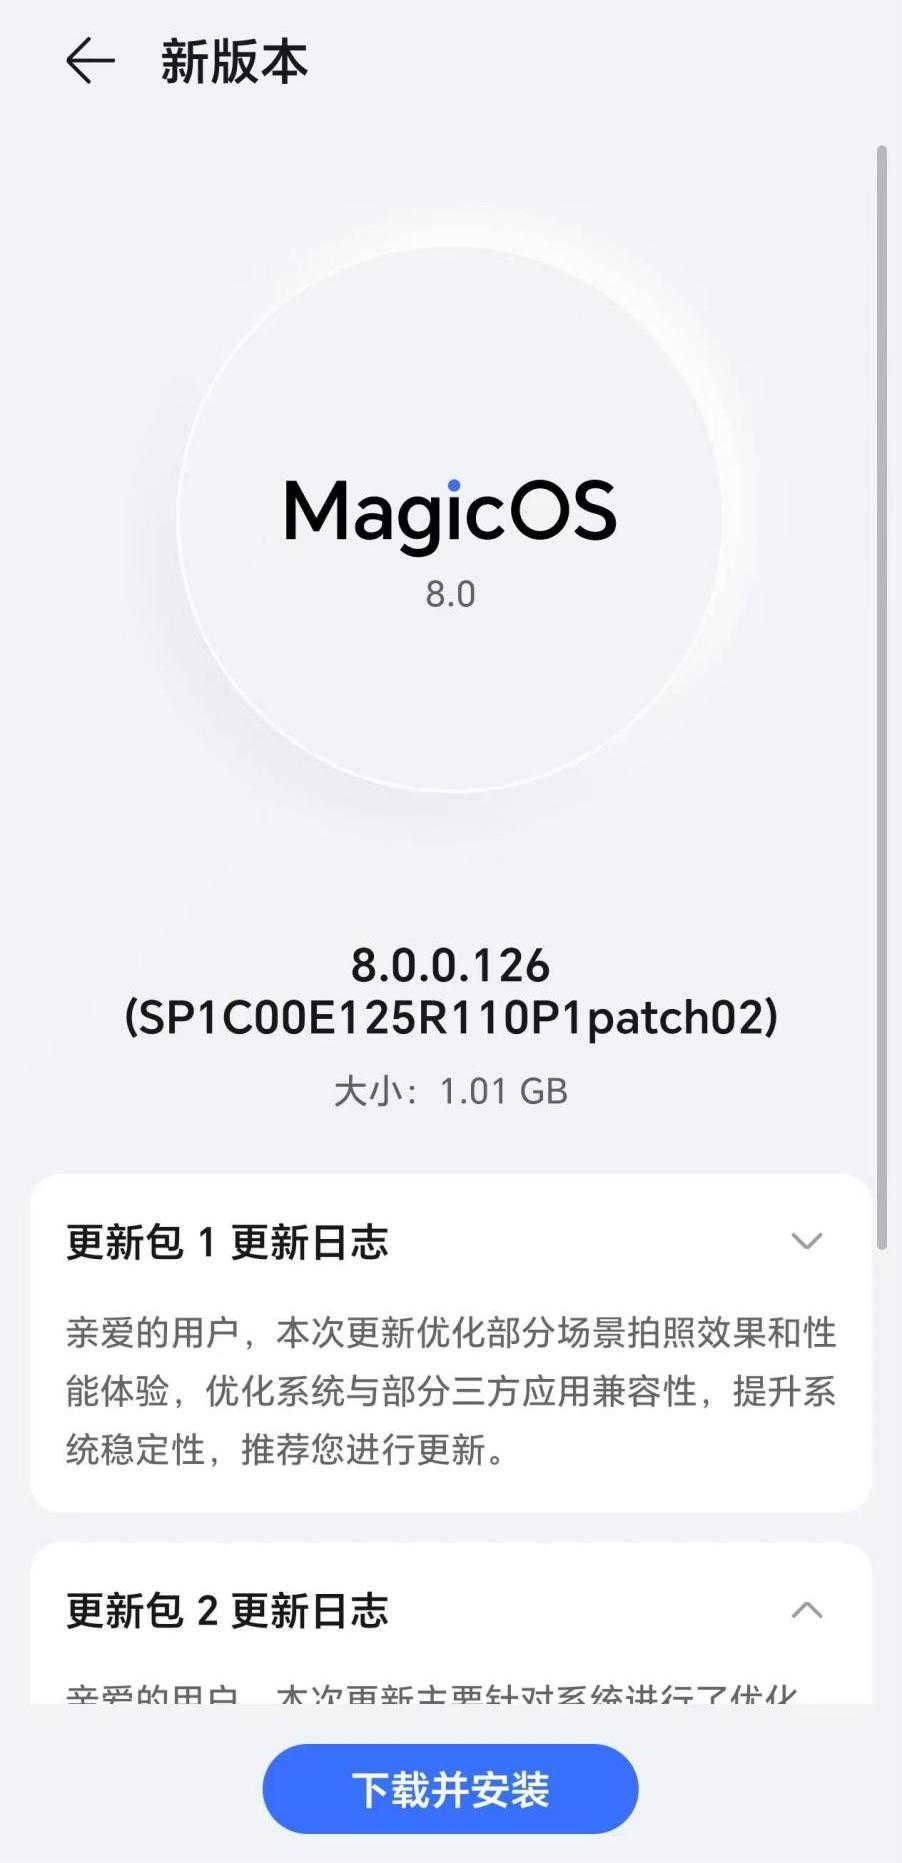 MagicOS 8.0.0.126